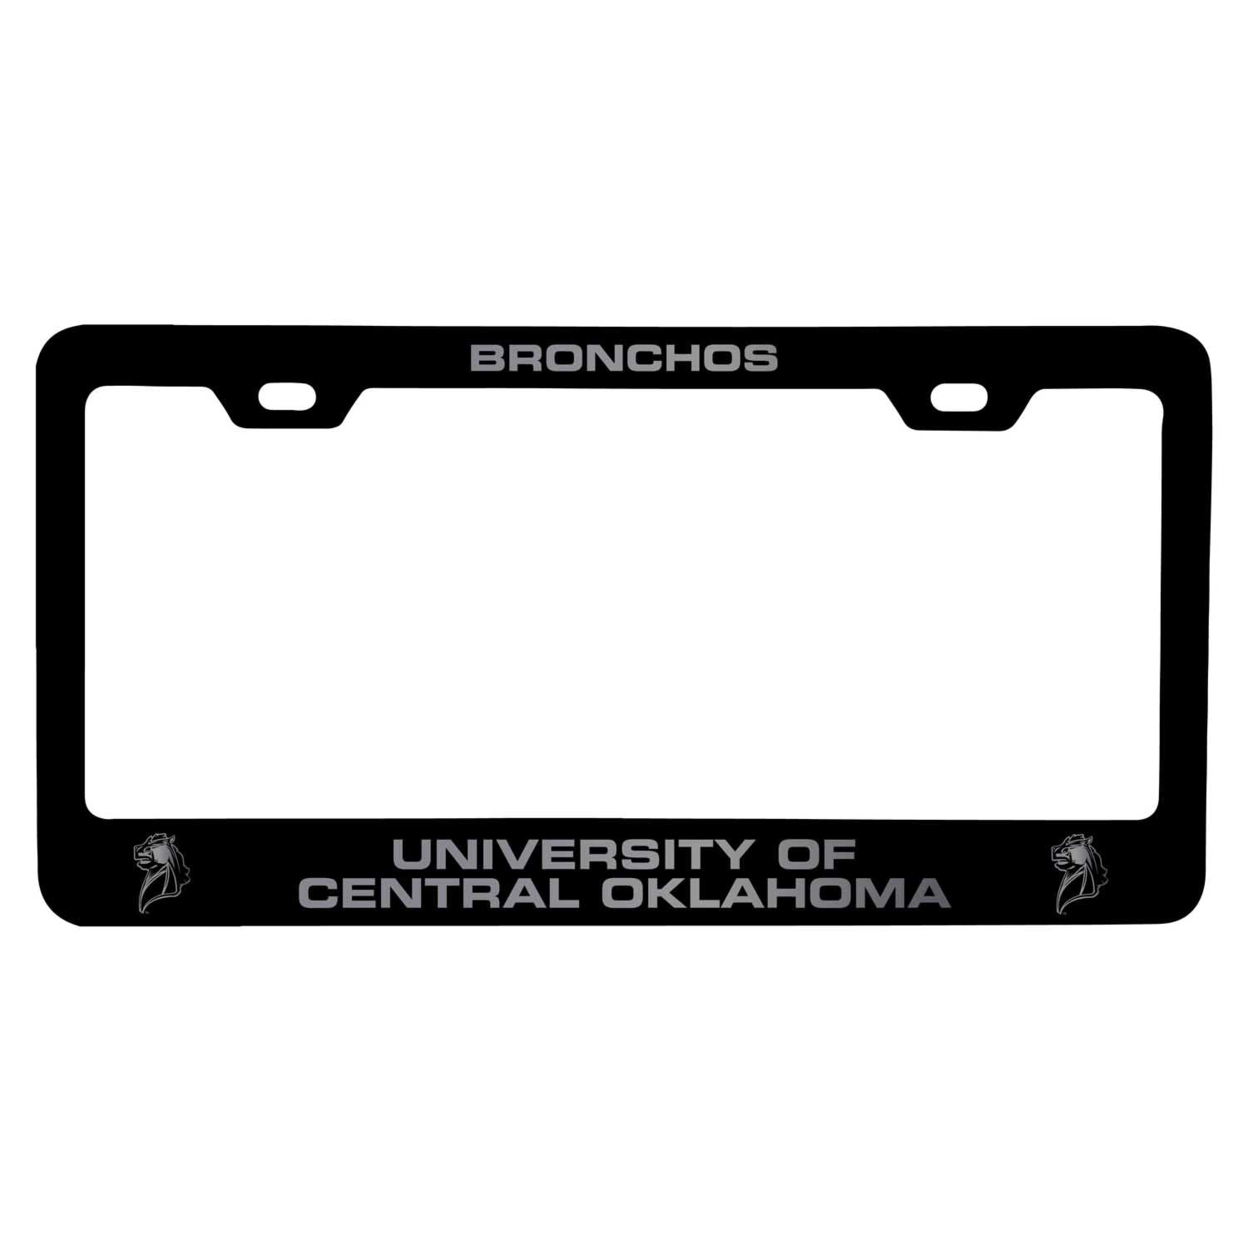 University Of Central Oklahoma Bronchos Laser Engraved Metal License Plate Frame - Choose Your Color - Black